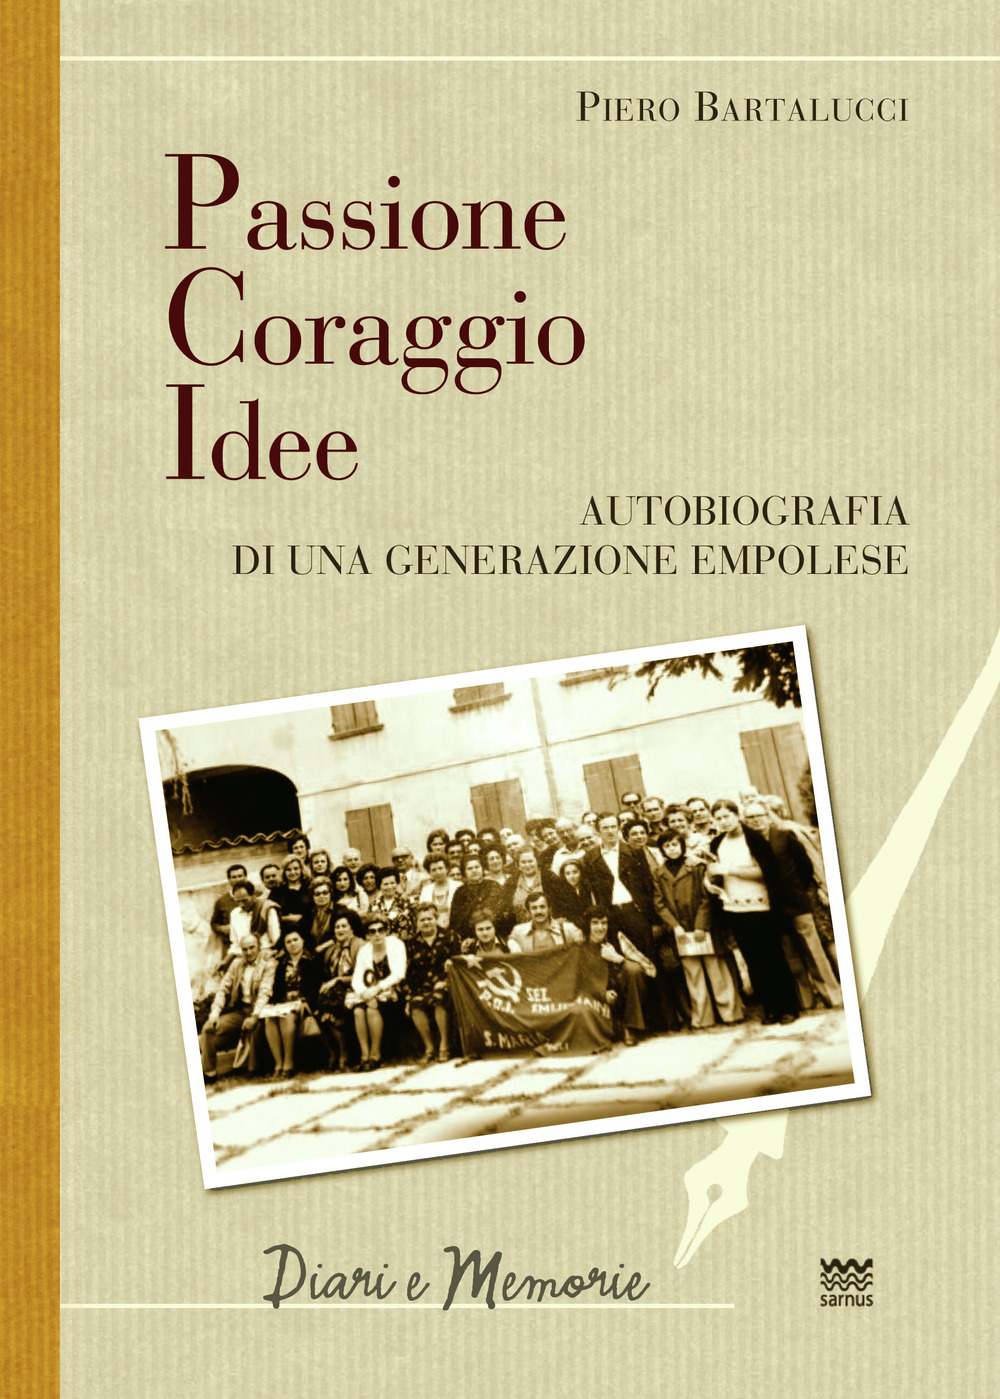 Libri Bartalucci Piero - Passione Coraggio Idee. Autobiografia Di Una Generazione Empolese NUOVO SIGILLATO, EDIZIONE DEL 04/10/2019 SUBITO DISPONIBILE